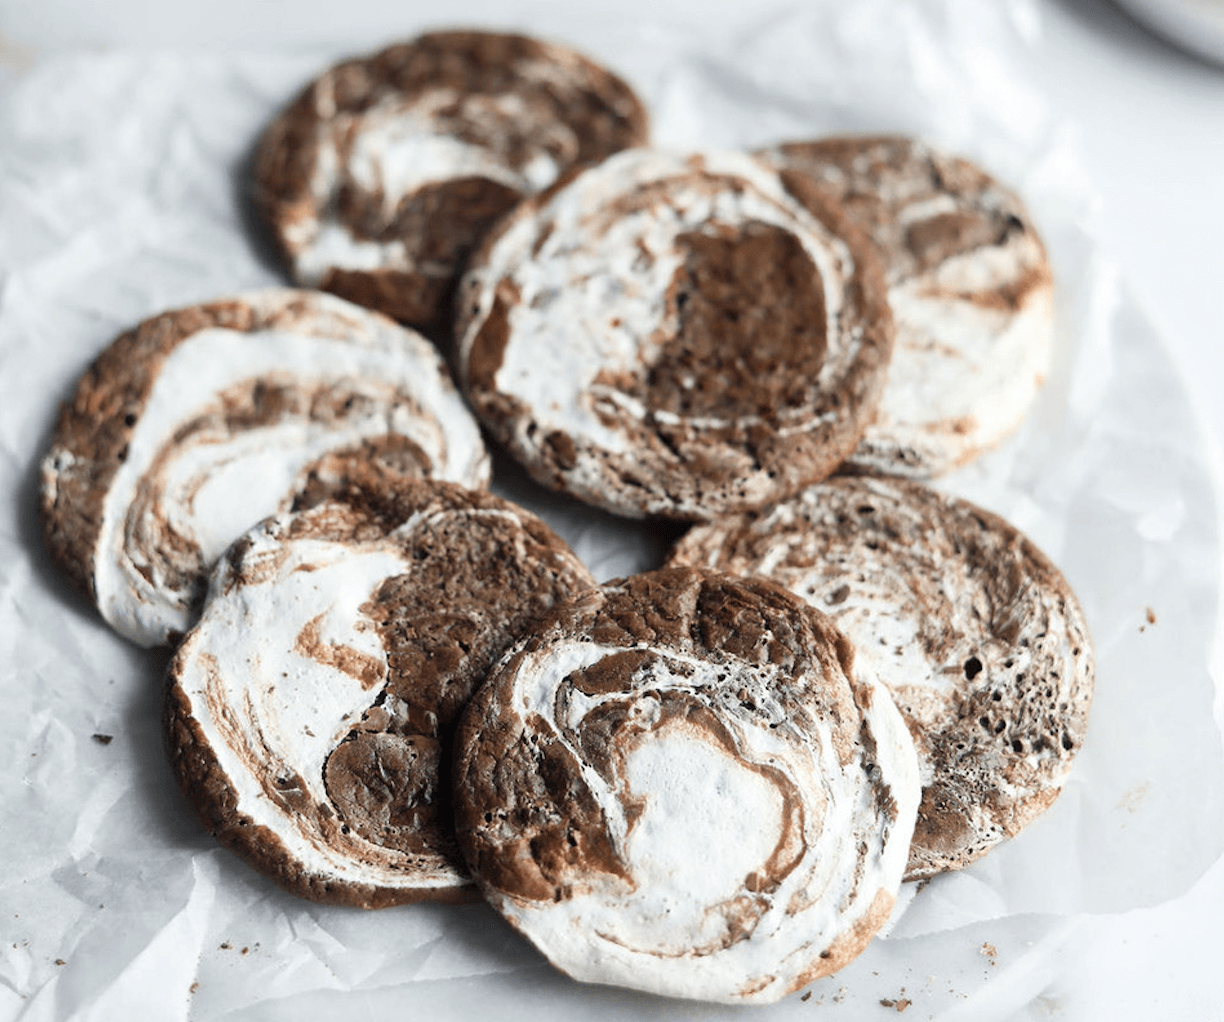 Hot Chocolate Marshmallow Swirl Cookies